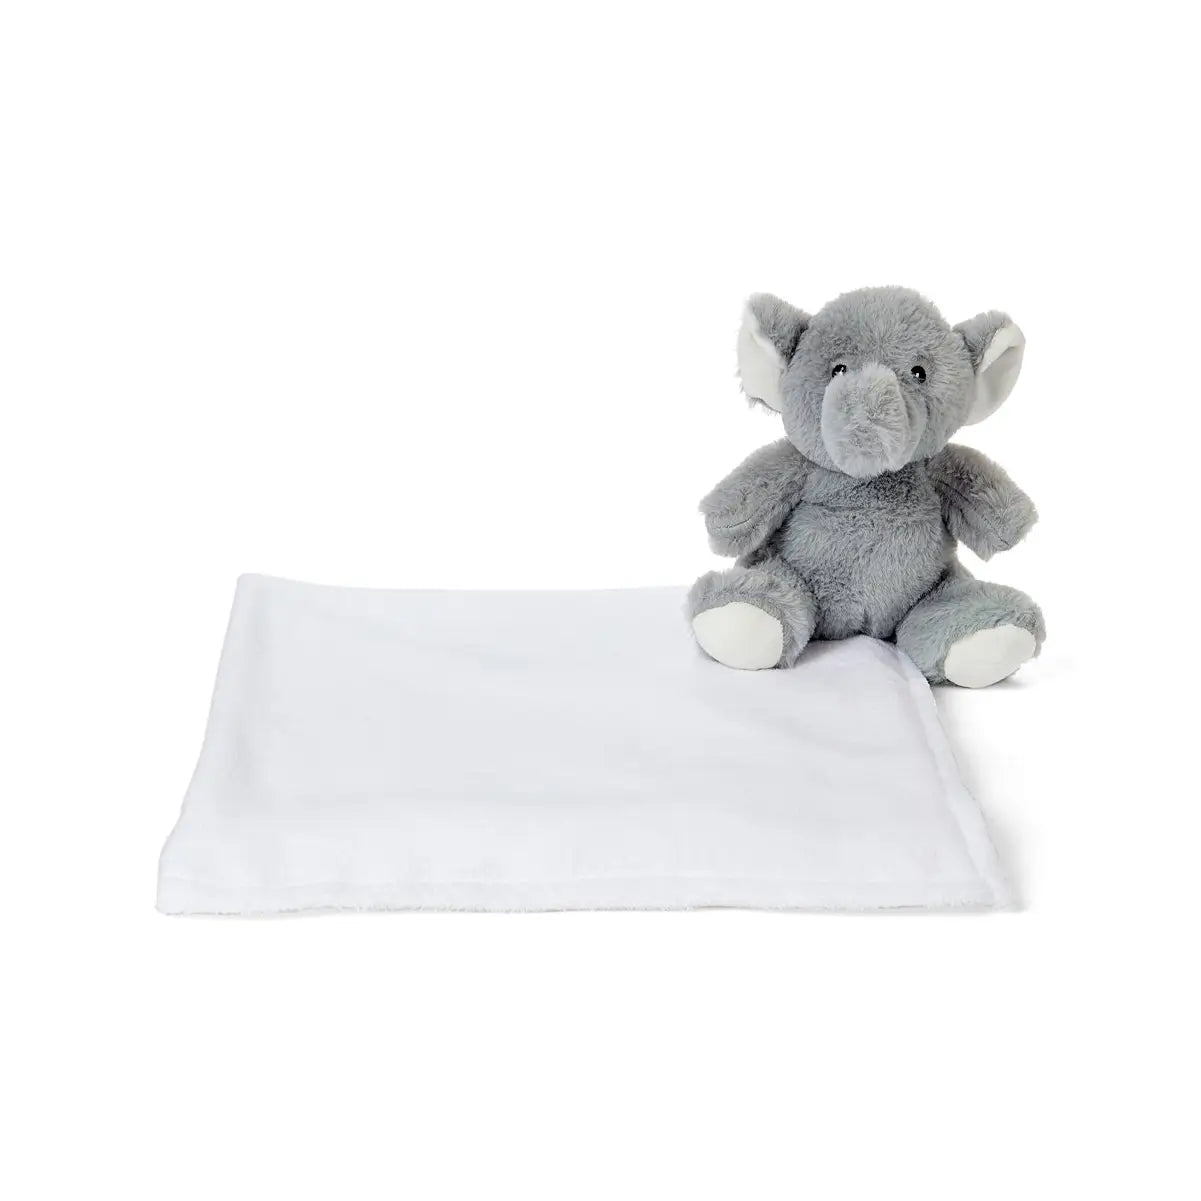 Animal With Blanket - Grey Elephant